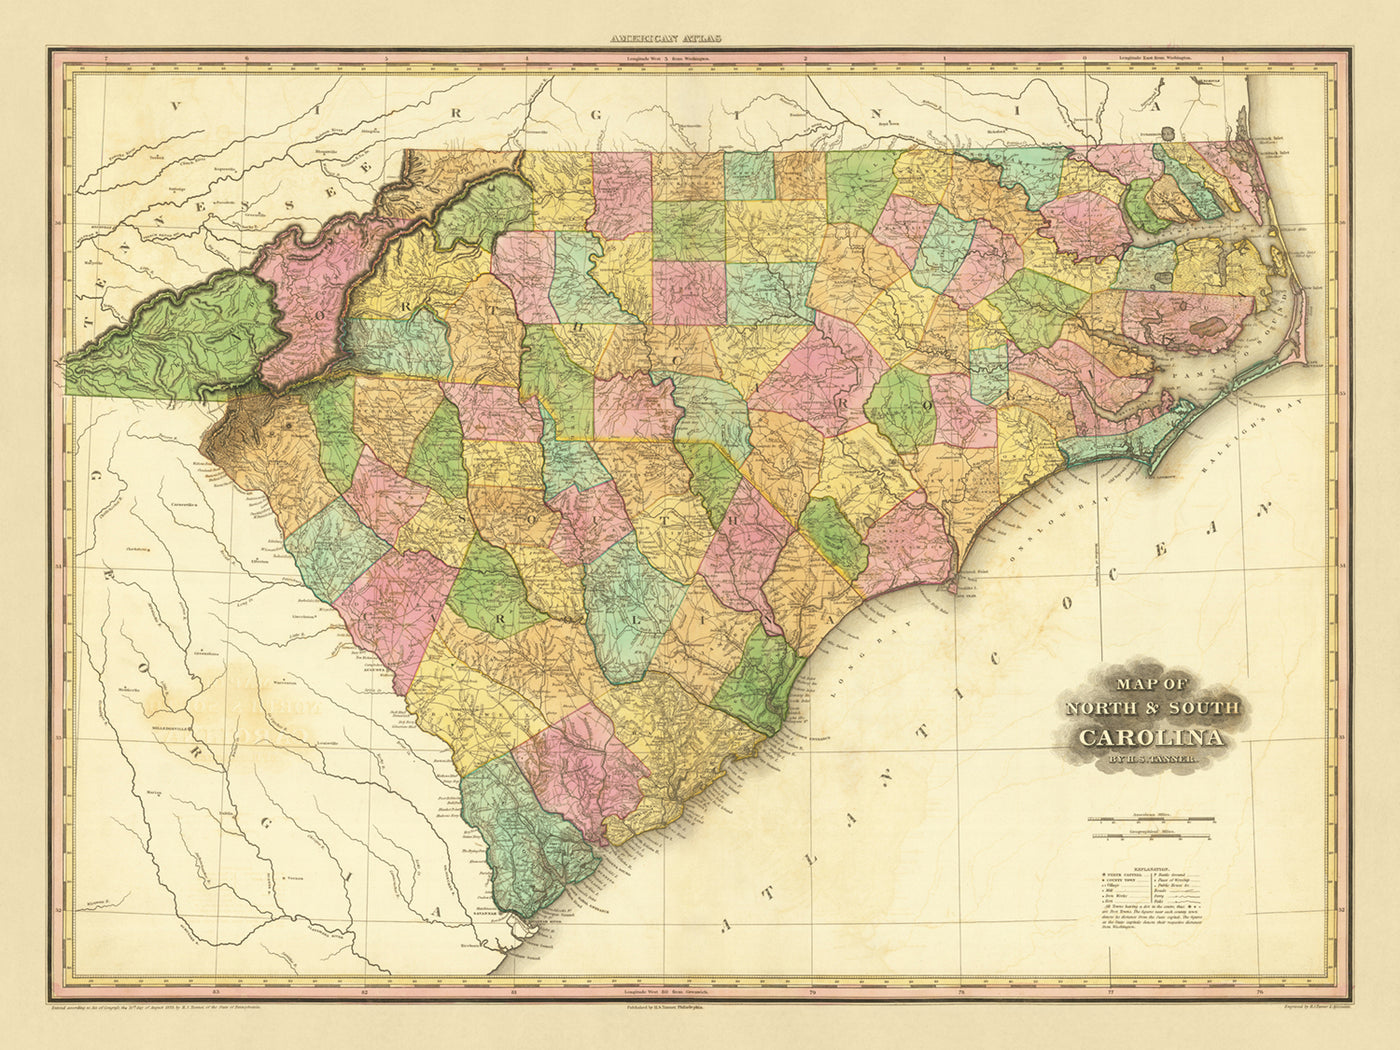 Ancienne carte de la Caroline du Nord et du Sud par Tanner, 1823 : Charleston, Columbia, Charlotte, Raleigh et Wilmington